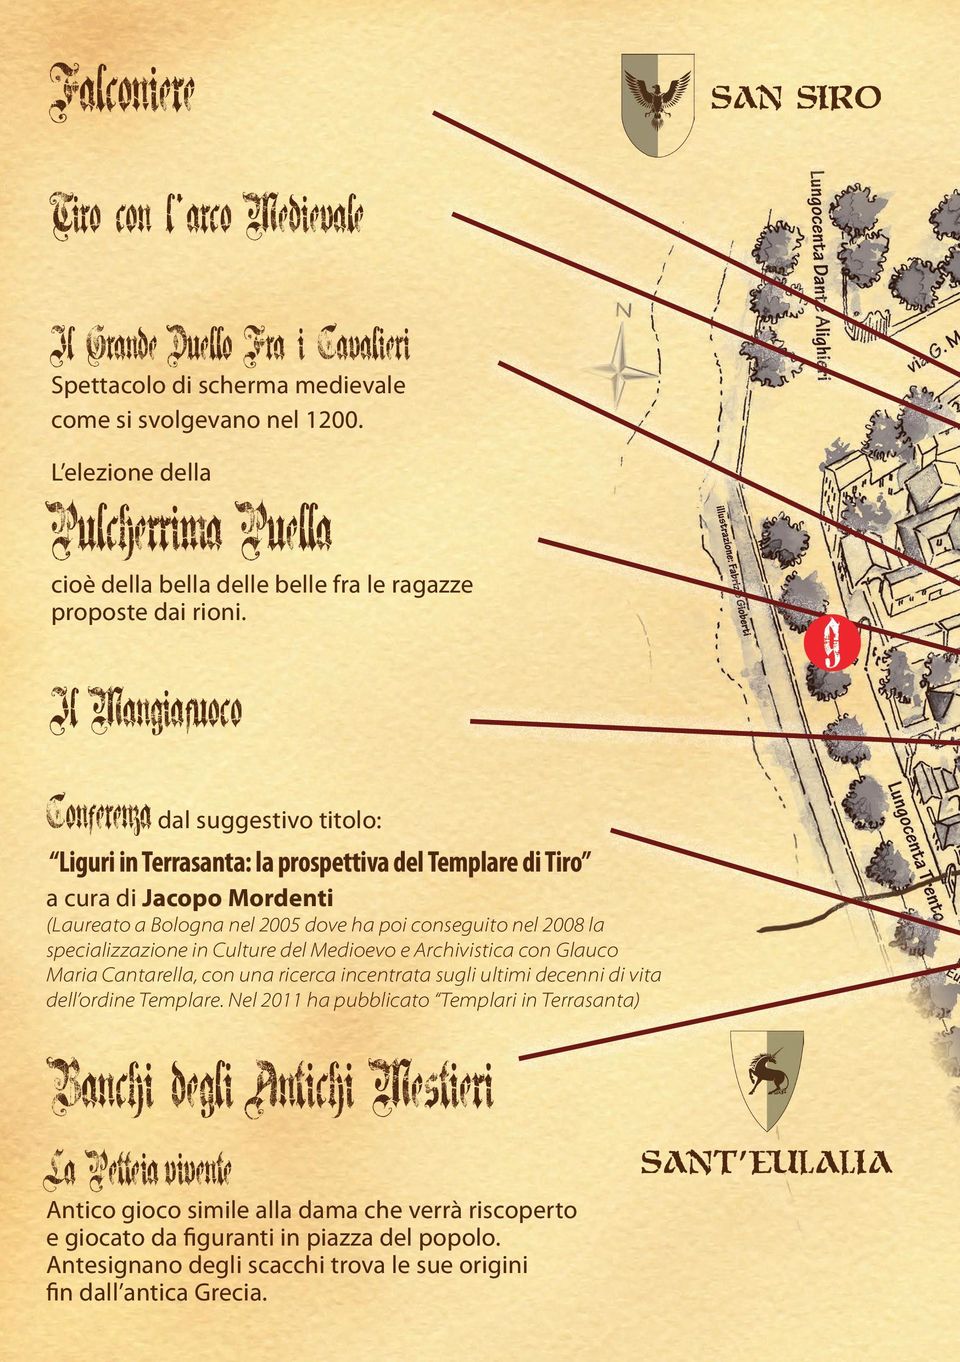 Il Mangiafuoco Conferenza dal suggestivo titolo: Liguri in Terrasanta: la prospettiva del Templare di Tiro a cura di Jacopo Mordenti (Laureato a Bologna nel 2005 dove ha poi conseguito nel 2008 la